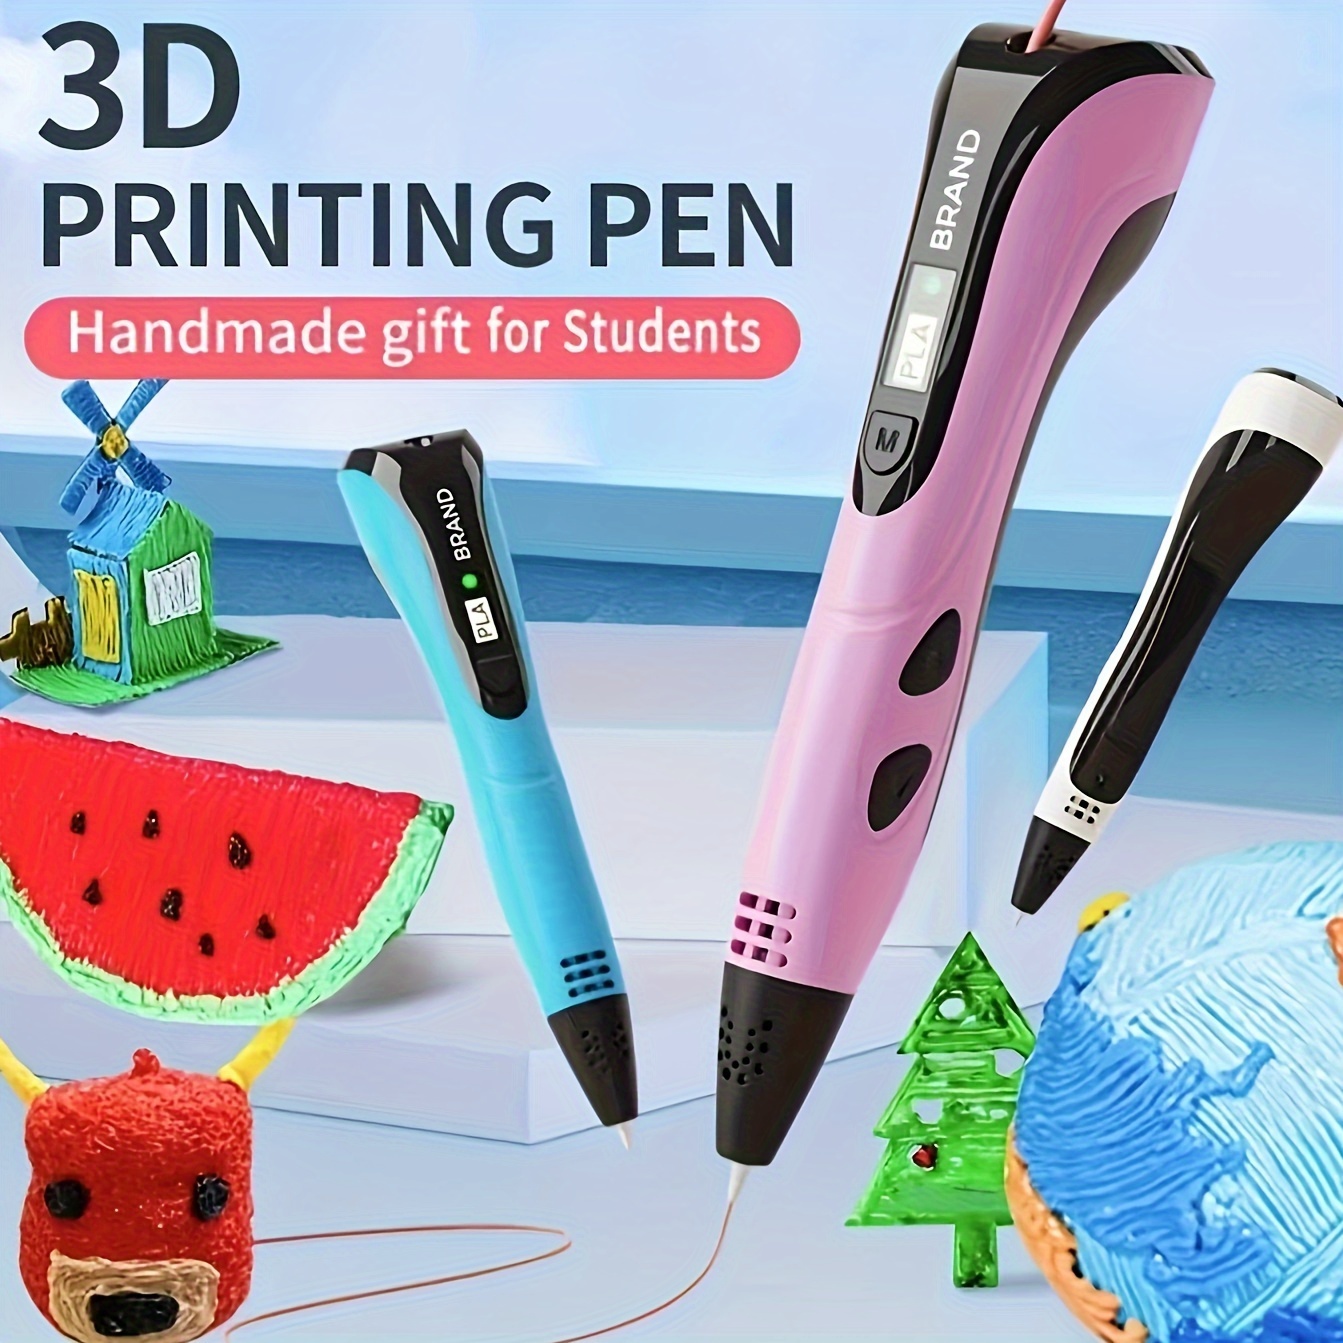 TodoMicro - El Lápiz 3D ofrece más comodidad dibujando, es un increíble  regalo para niños de 8 años en adelante, estos lapices remplazan la tinta  por plástico derretido a alta temperatura para